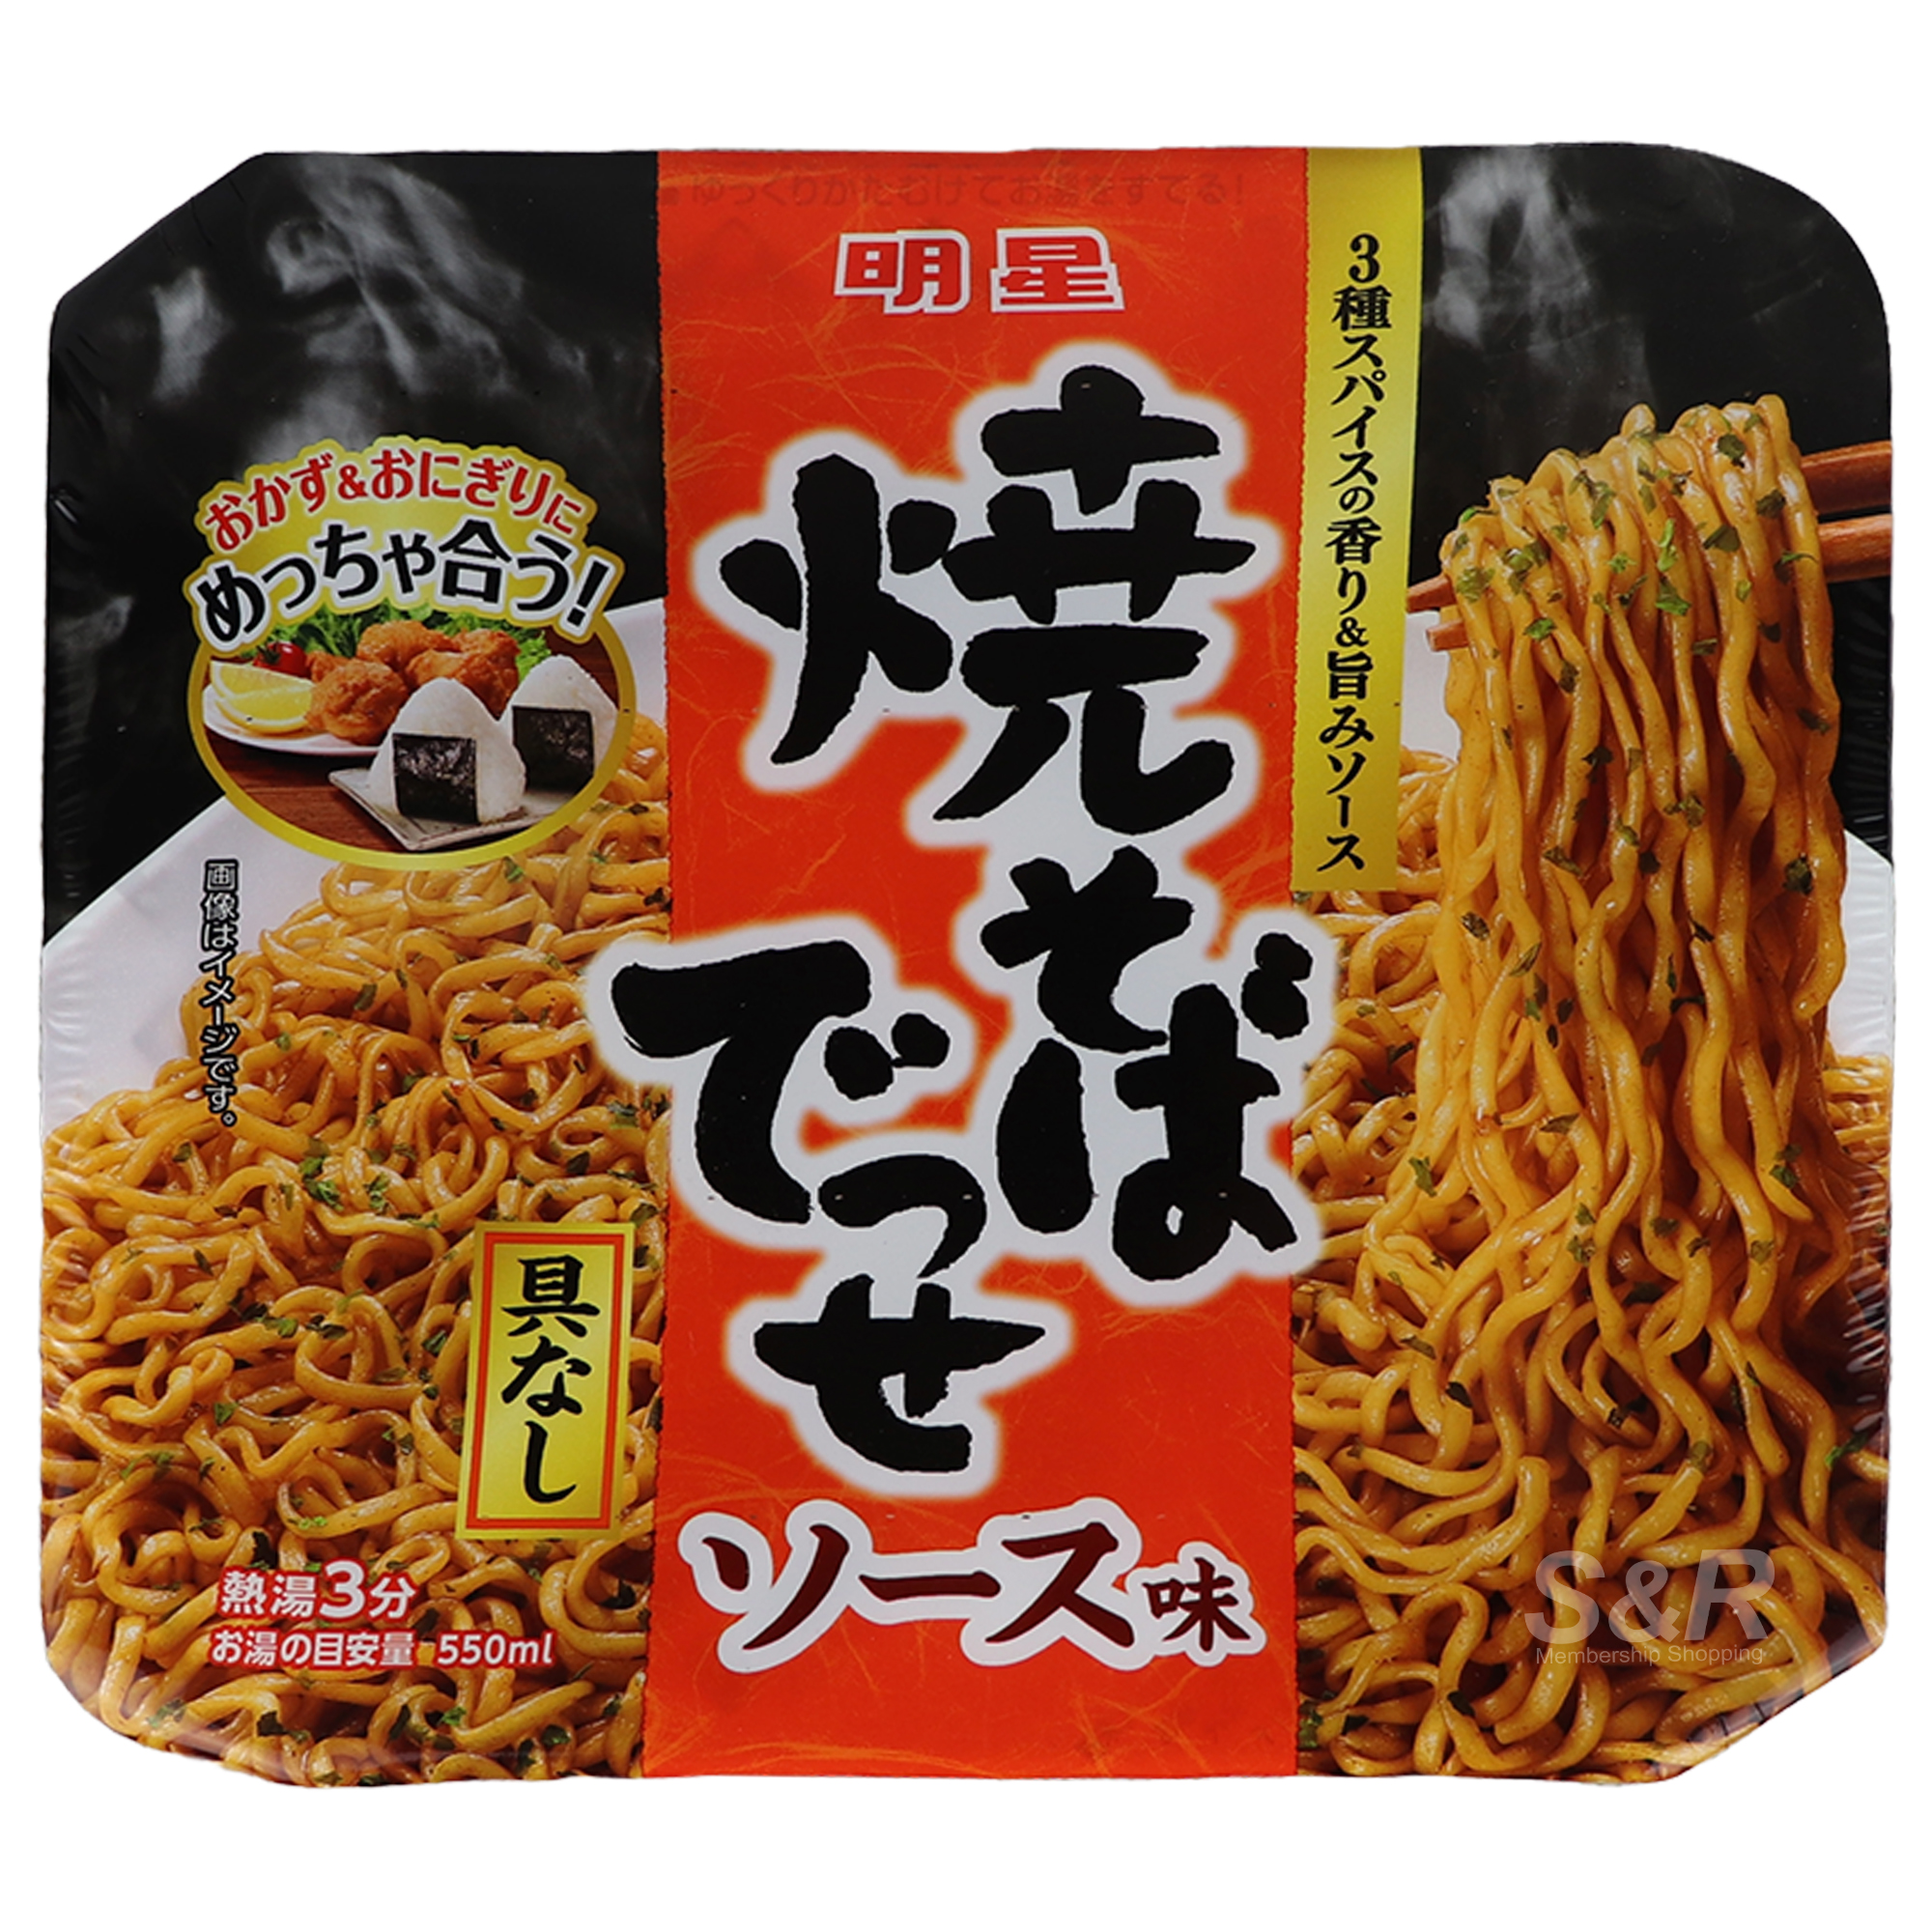 Myoko Yakisoba Noodle Sauce Flavor 99g